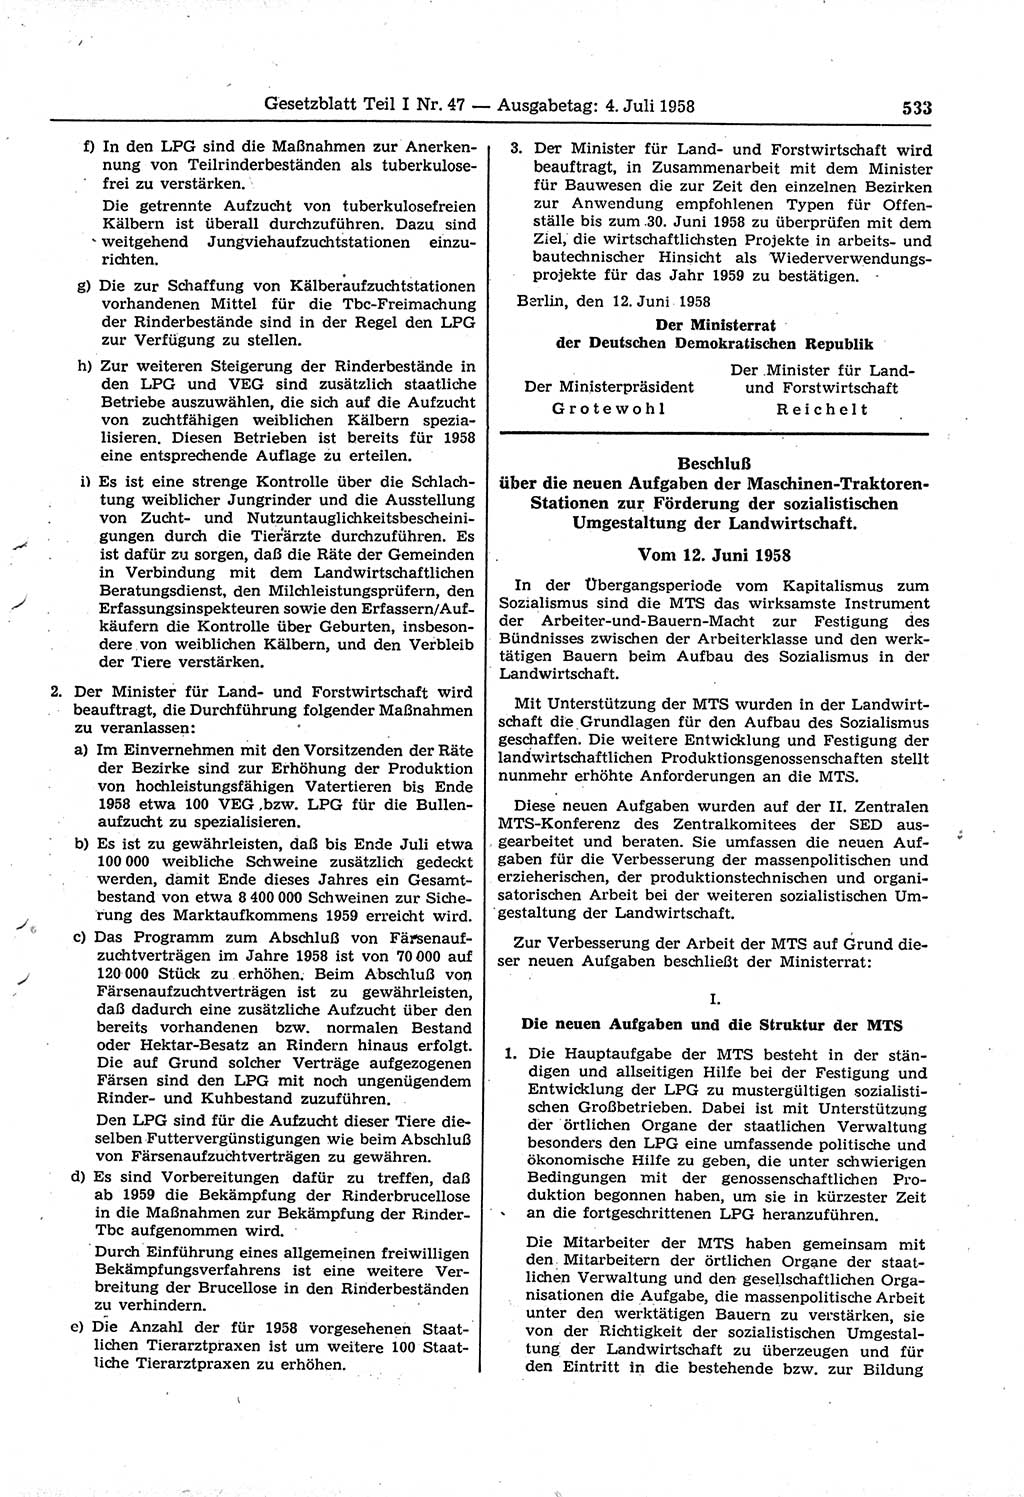 Gesetzblatt (GBl.) der Deutschen Demokratischen Republik (DDR) Teil Ⅰ 1958, Seite 533 (GBl. DDR Ⅰ 1958, S. 533)